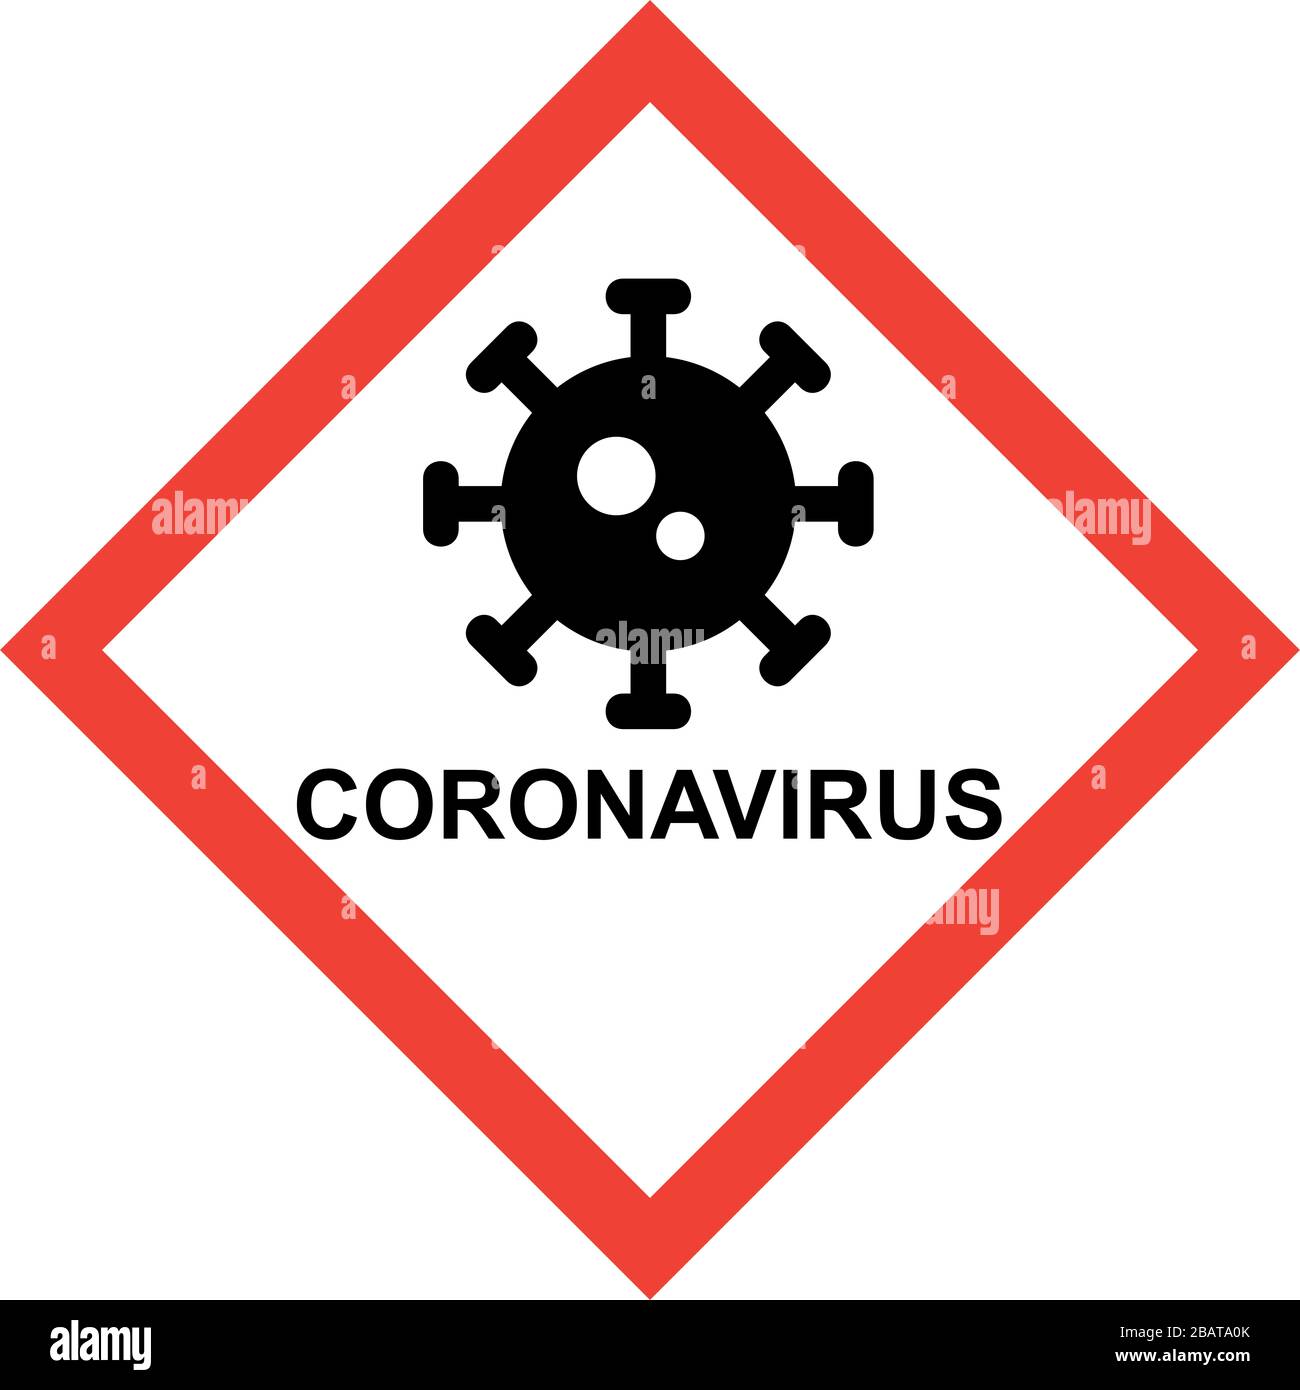 Signe de danger rouge avec symbole de virus et texte DE CORONAVIRUS Banque D'Images